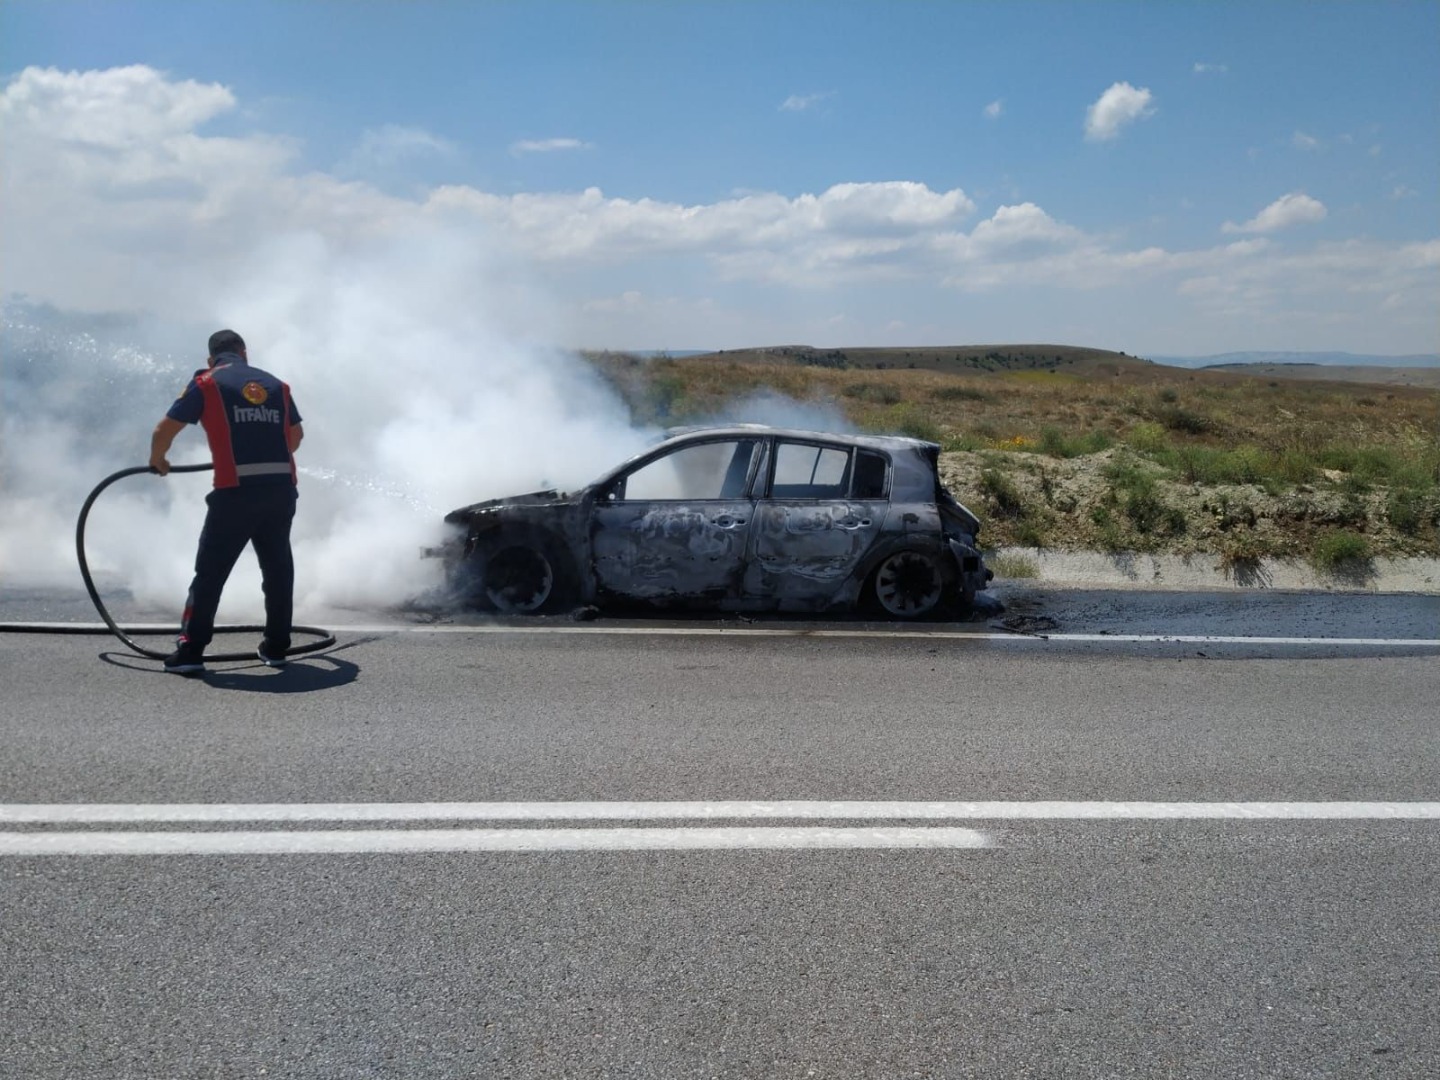 Seyir halindeyken yanan araç küle döndü